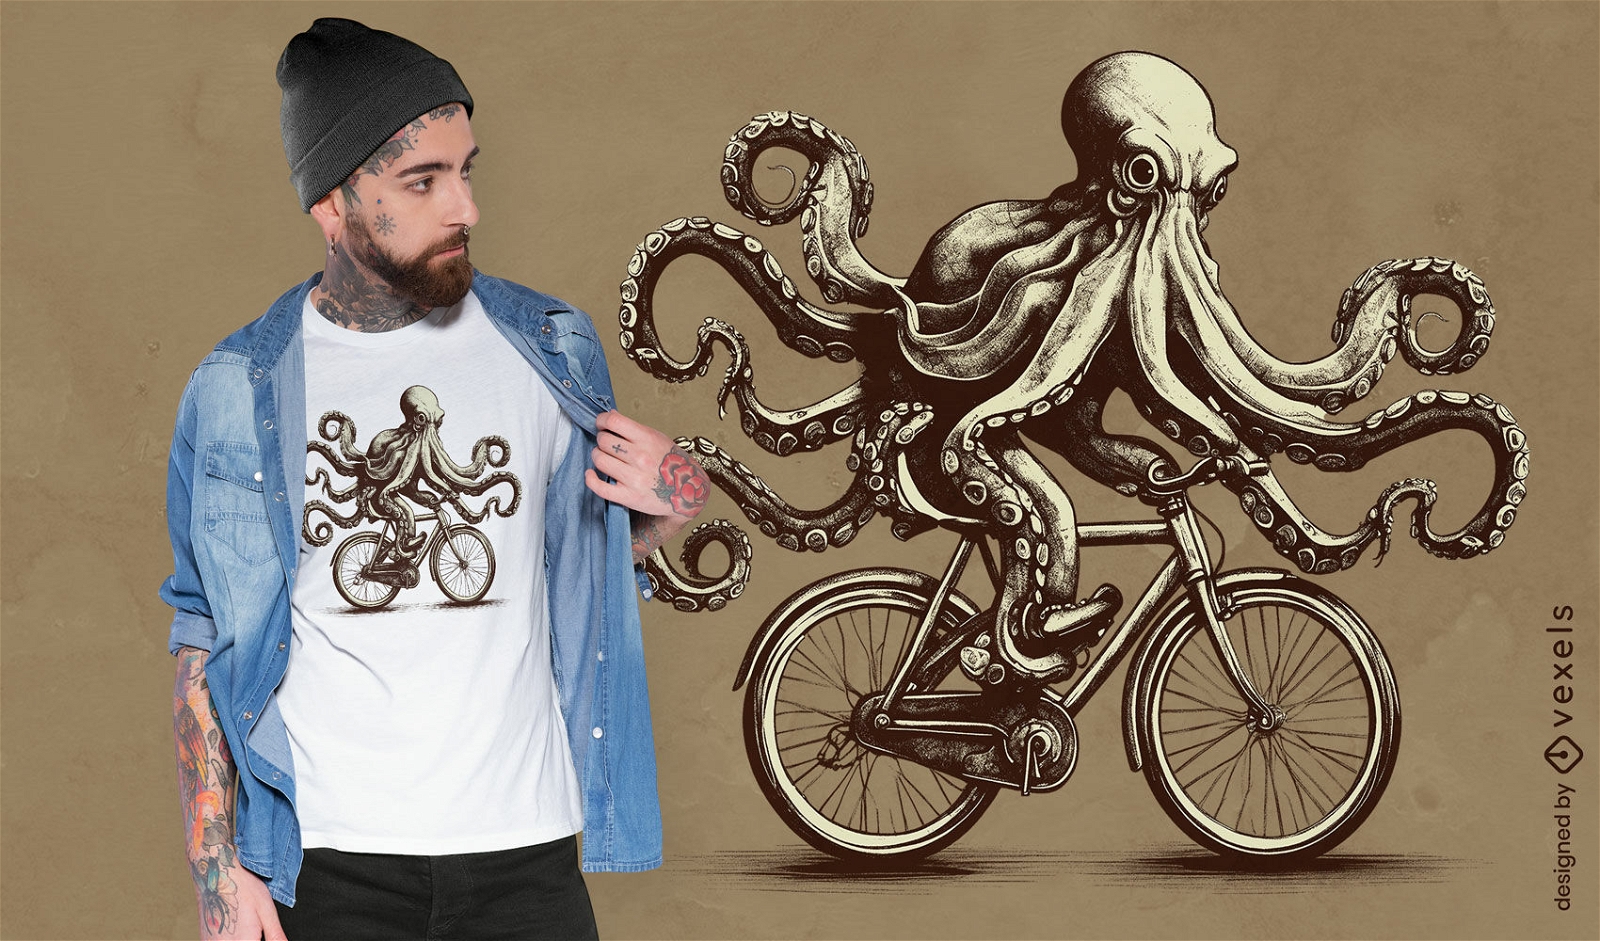 Dise?o de camiseta de pulpo en bicicleta.